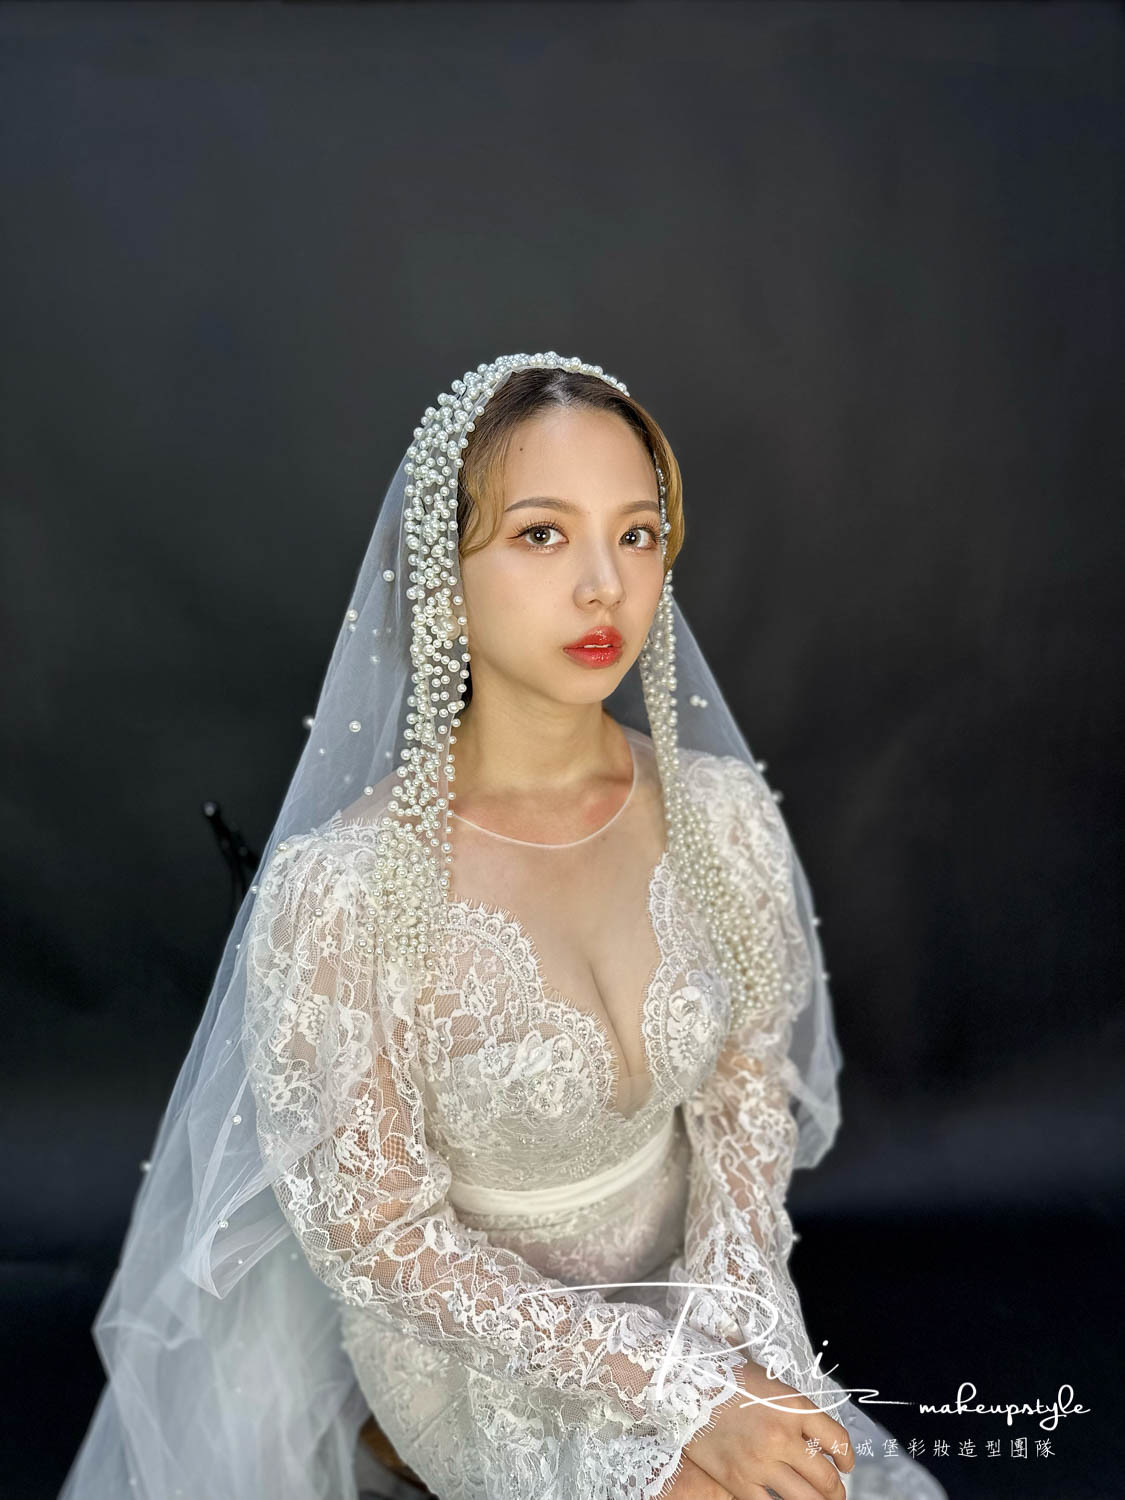 【新秘Rui】新娘造型創作 / 珍珠復古女伶